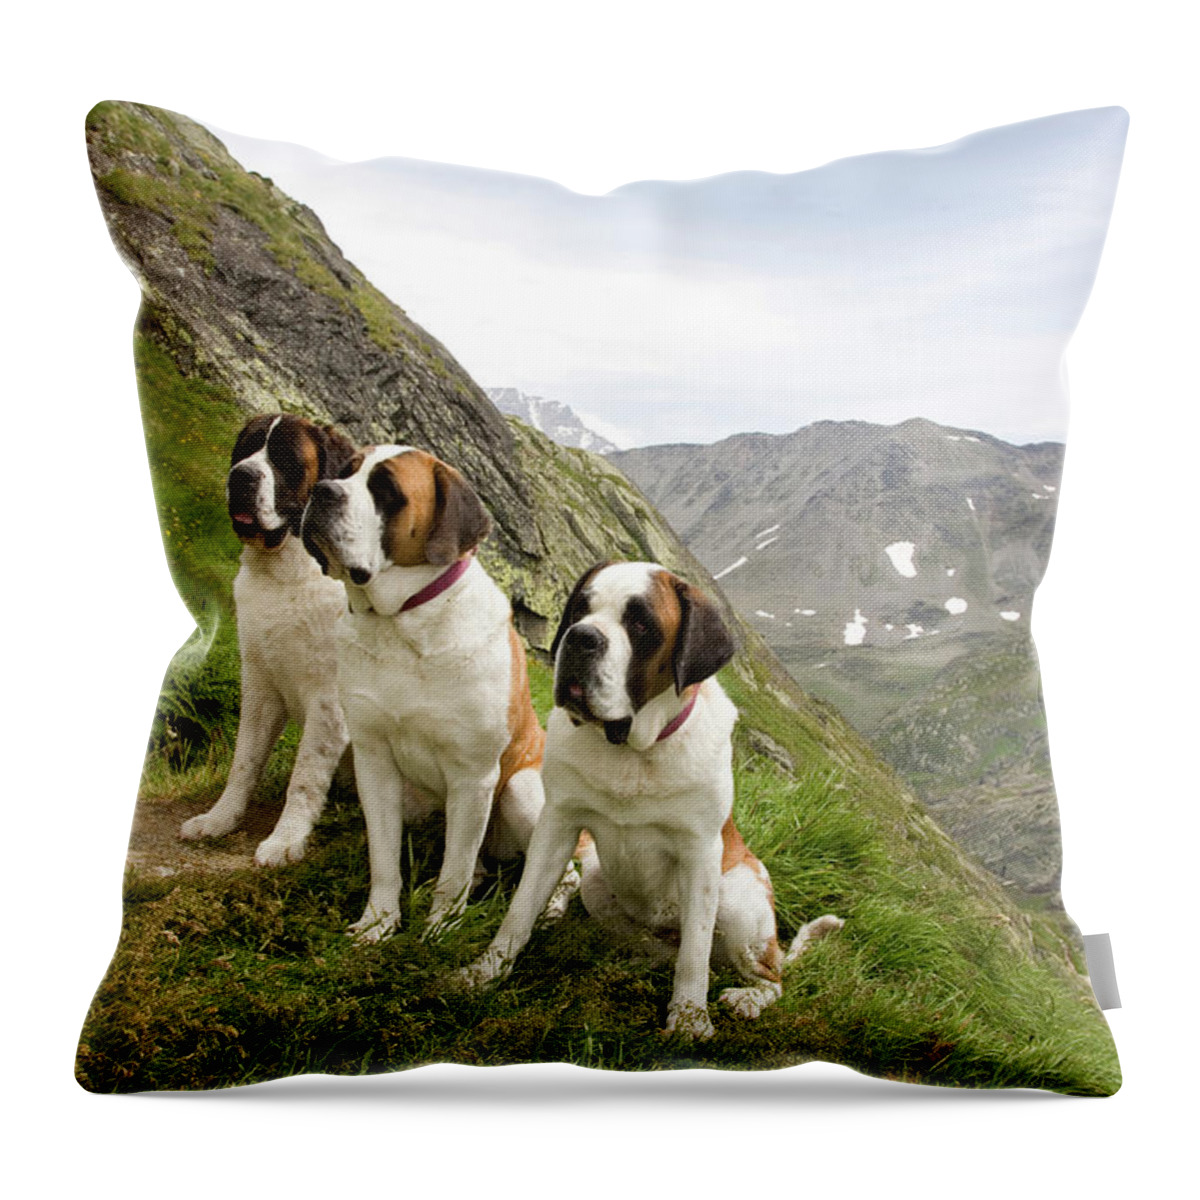 Ip_10237616 Throw Pillow featuring the photograph Two Saint Bernards In Great St. Bernard Pass, Valais, Switzerland #1 by Jalag / Walter Schmitz